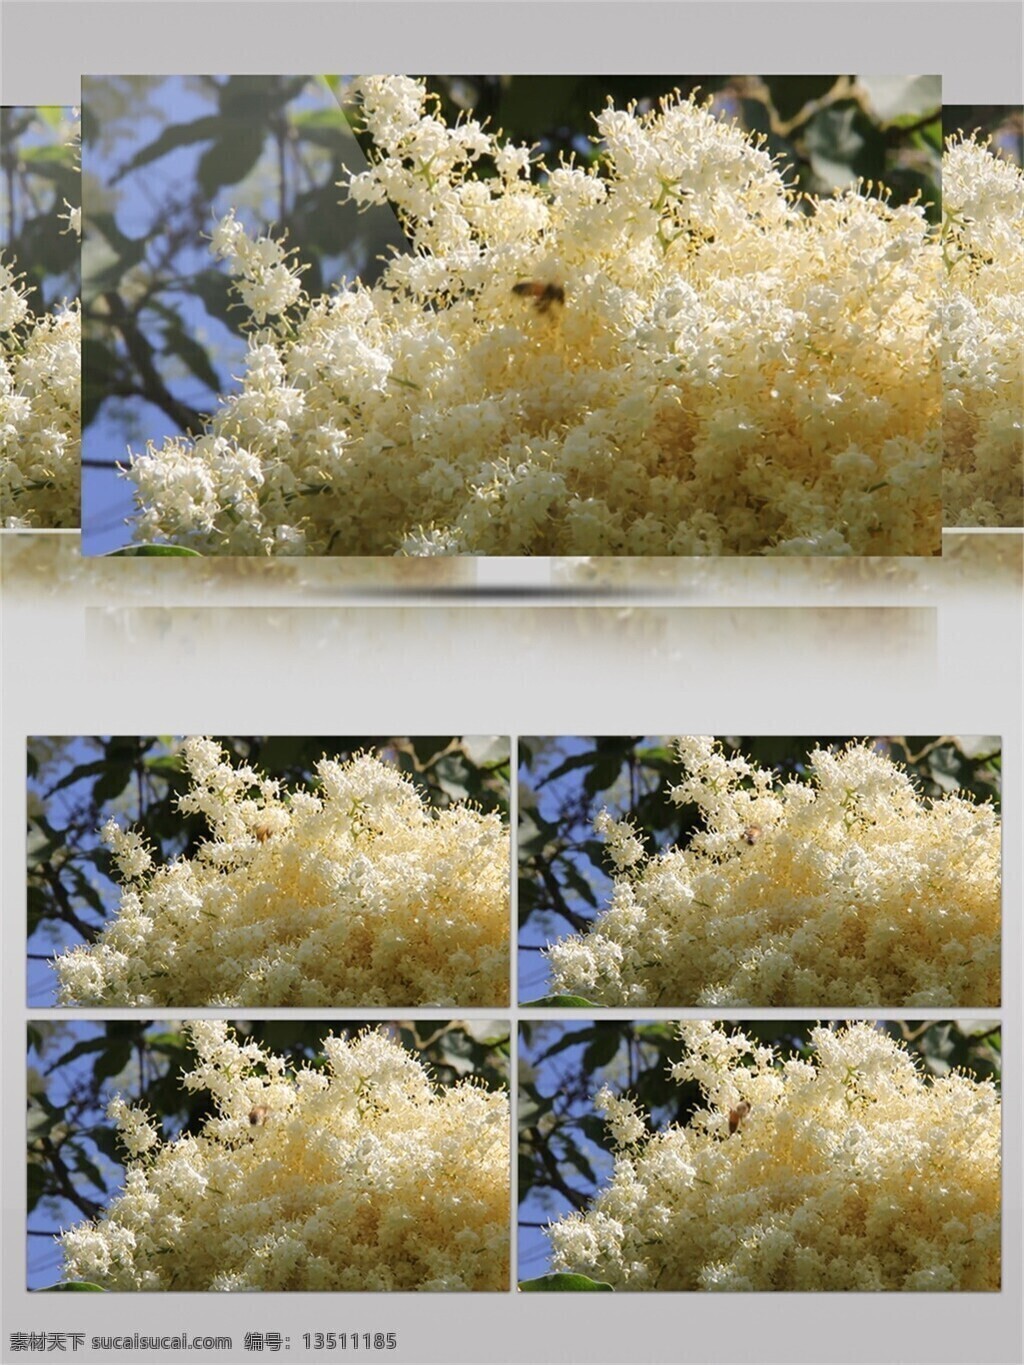 米 白色 繁花 忙碌 小 蜜蜂 视频 音效 花卉 清雅 唯美 采花 叶子 视频音效 近拍